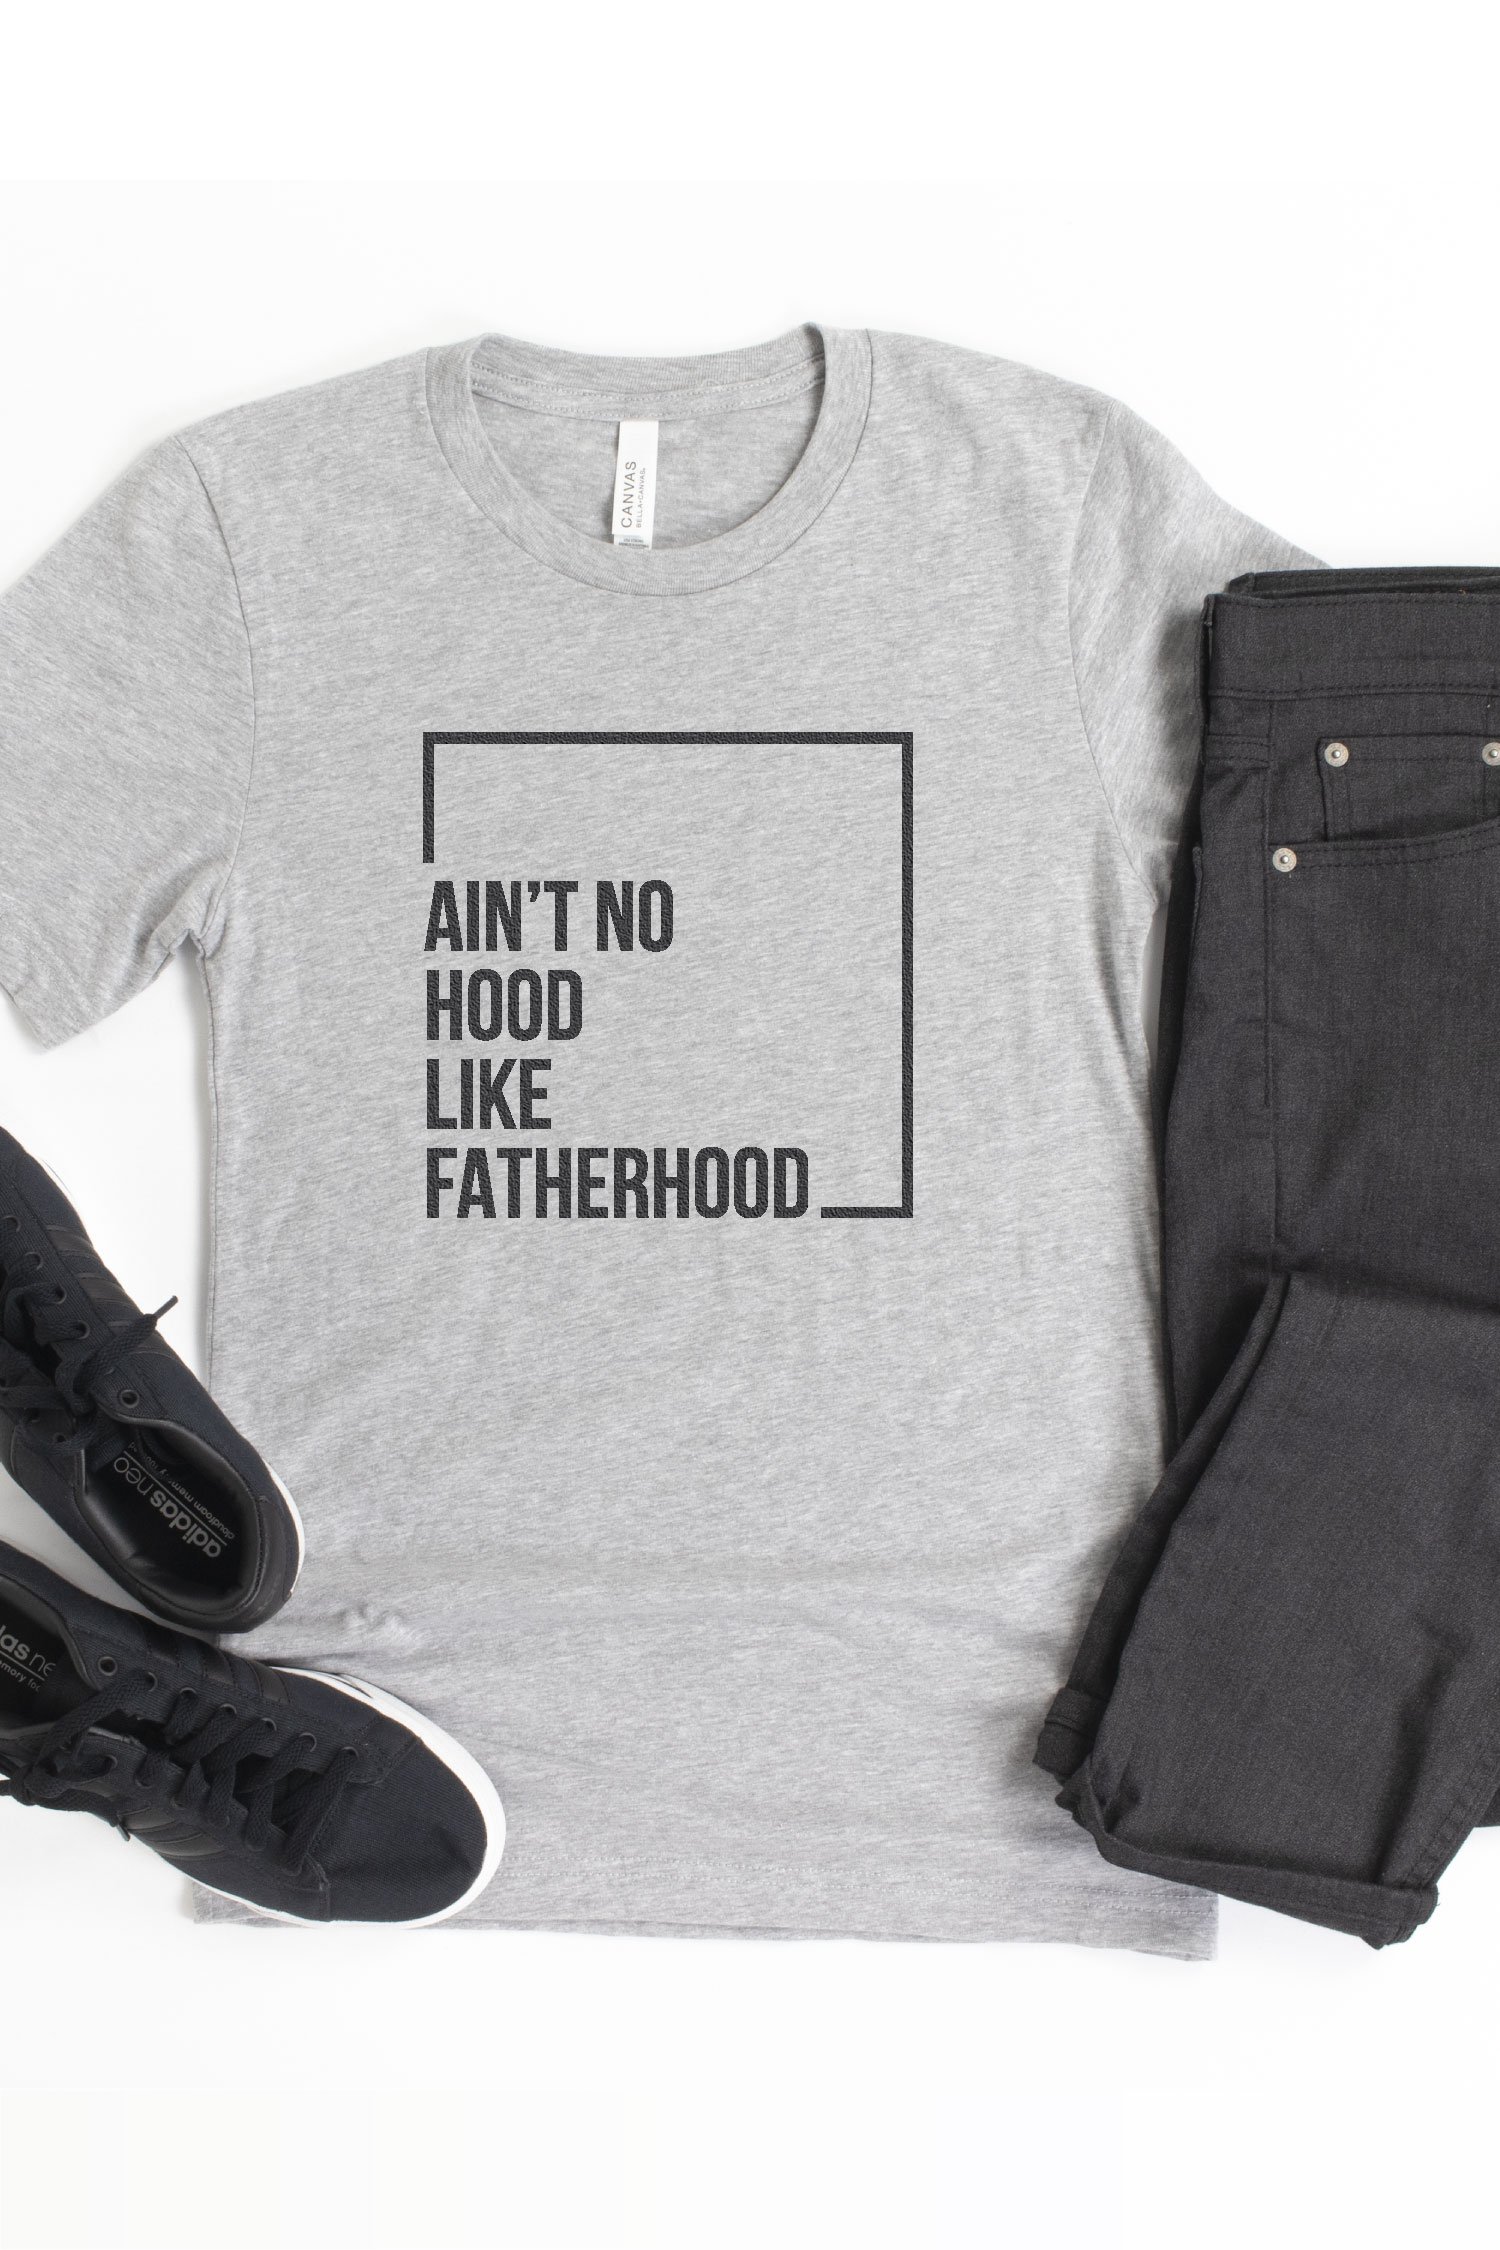 Ain’t No Hood like Fatherhood